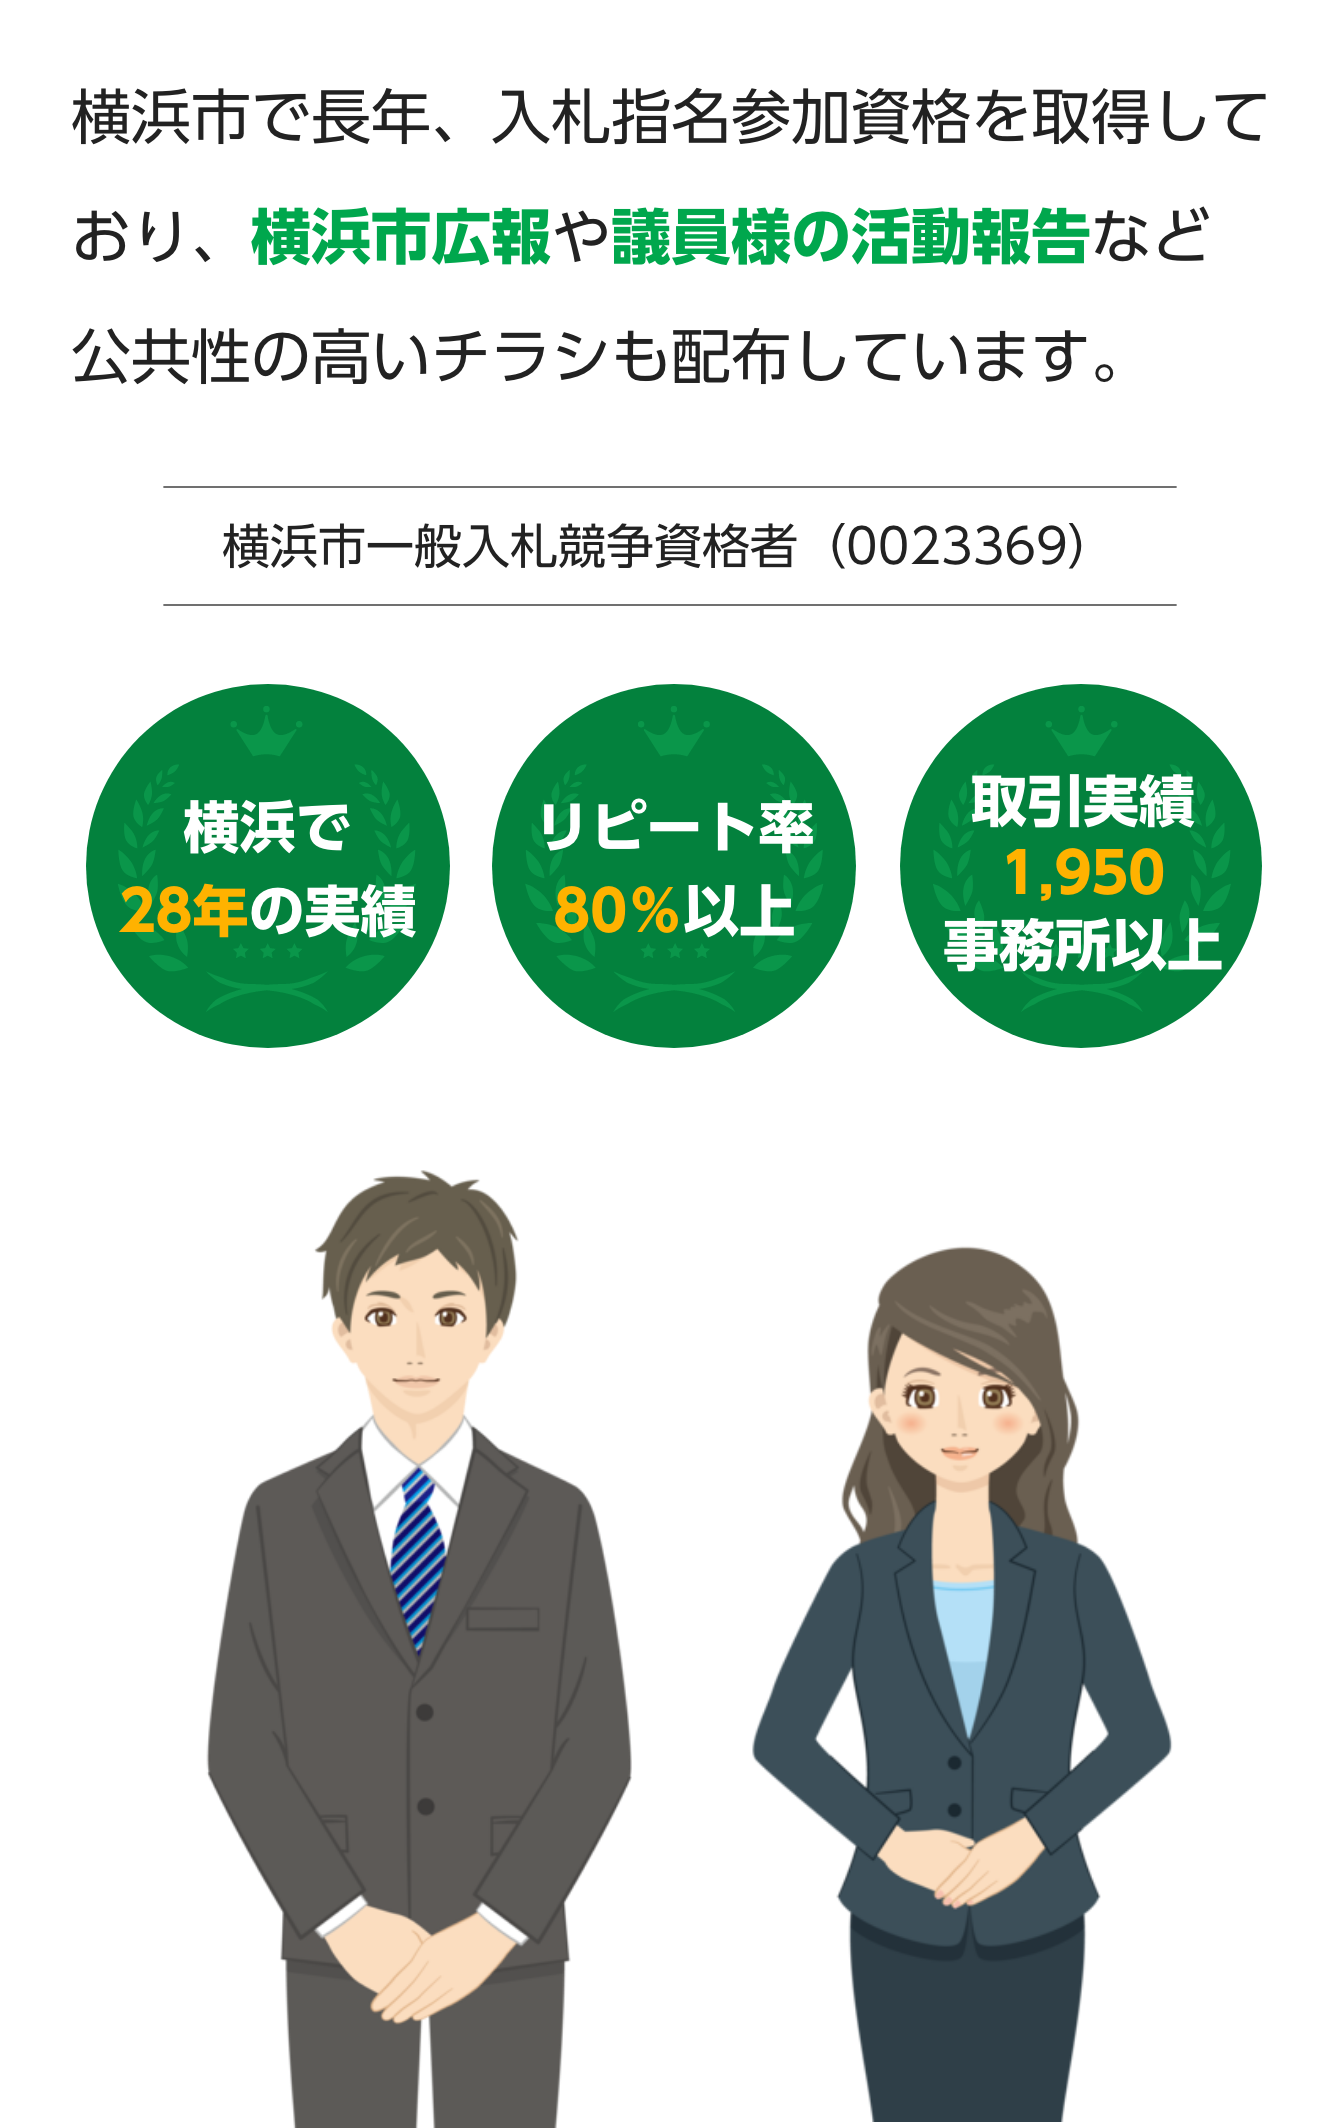 横浜市で長年、入札指名参加資格を取得しており横浜市広報や議員様の活動報告など公共性の高いチラシも配布しています。